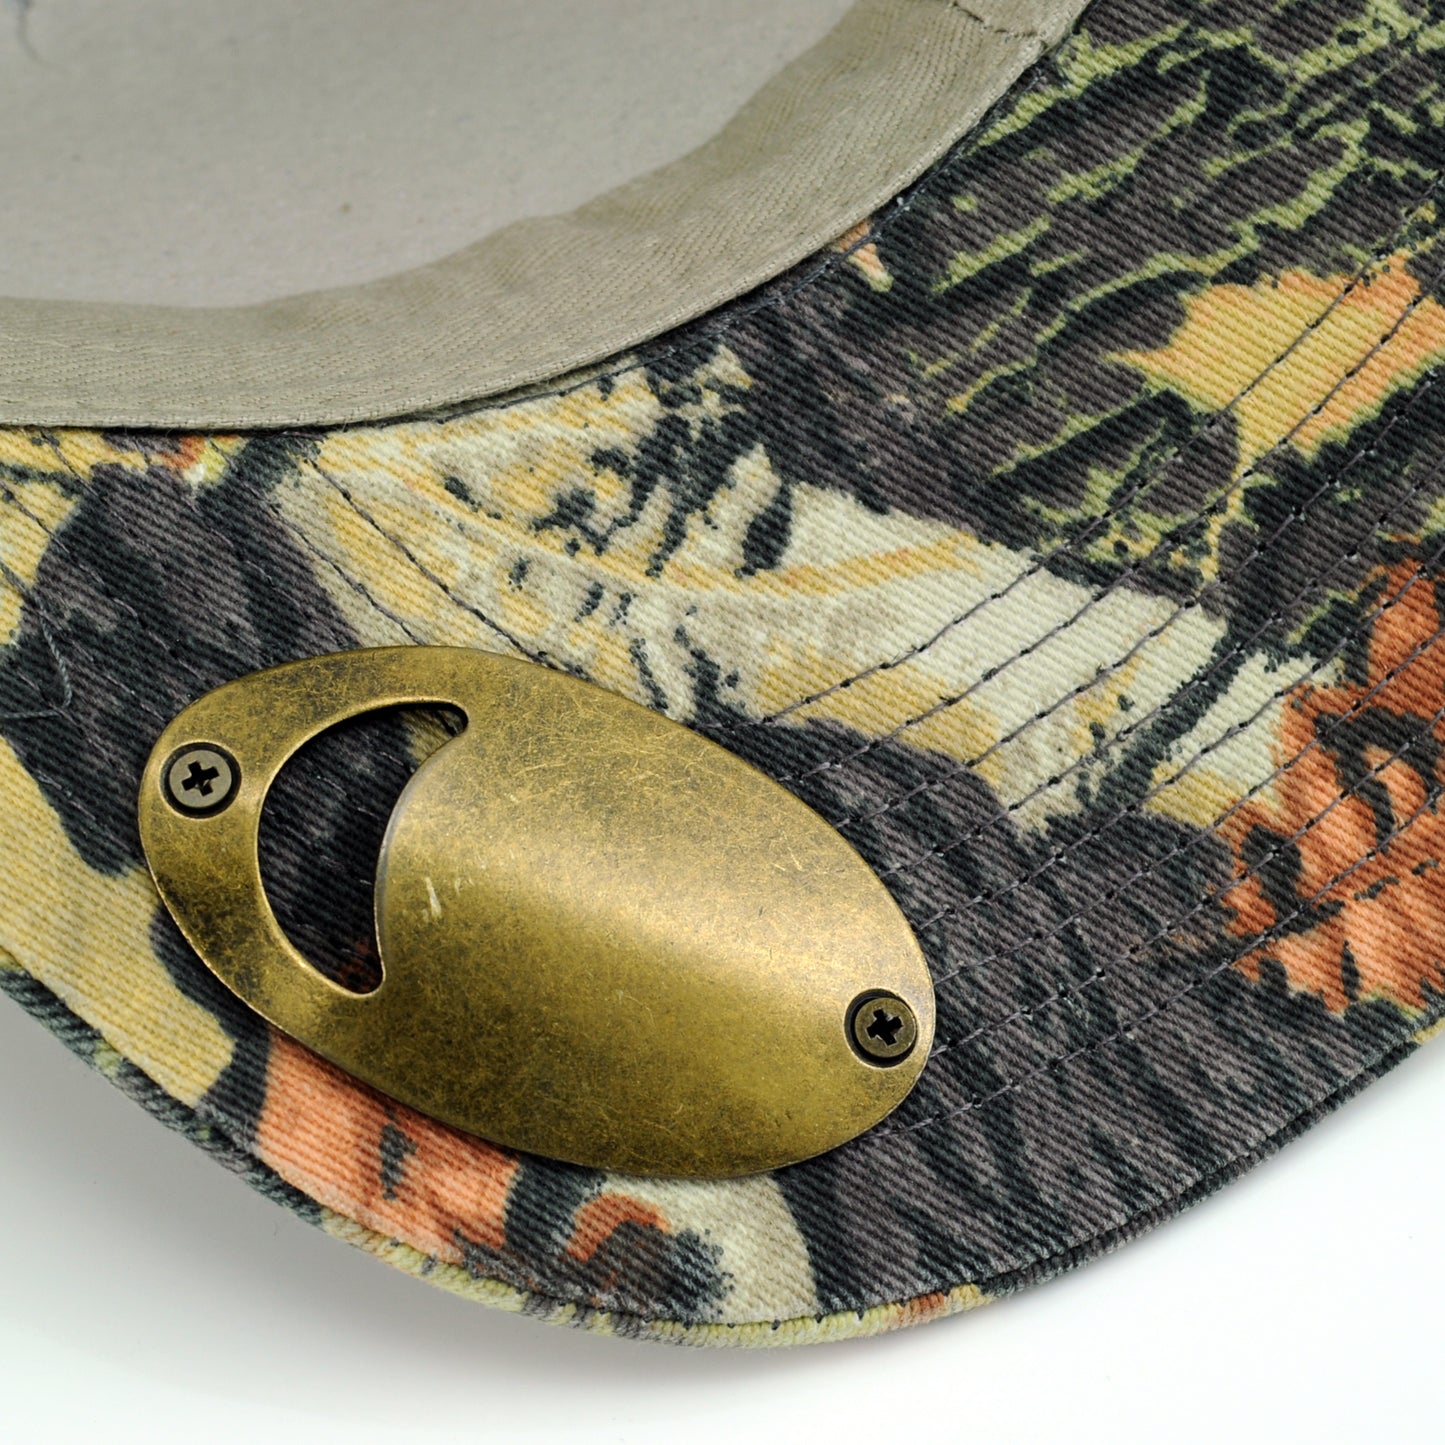 POP-A-TOP Snapback Hat with Bottle Opener Dark Camo